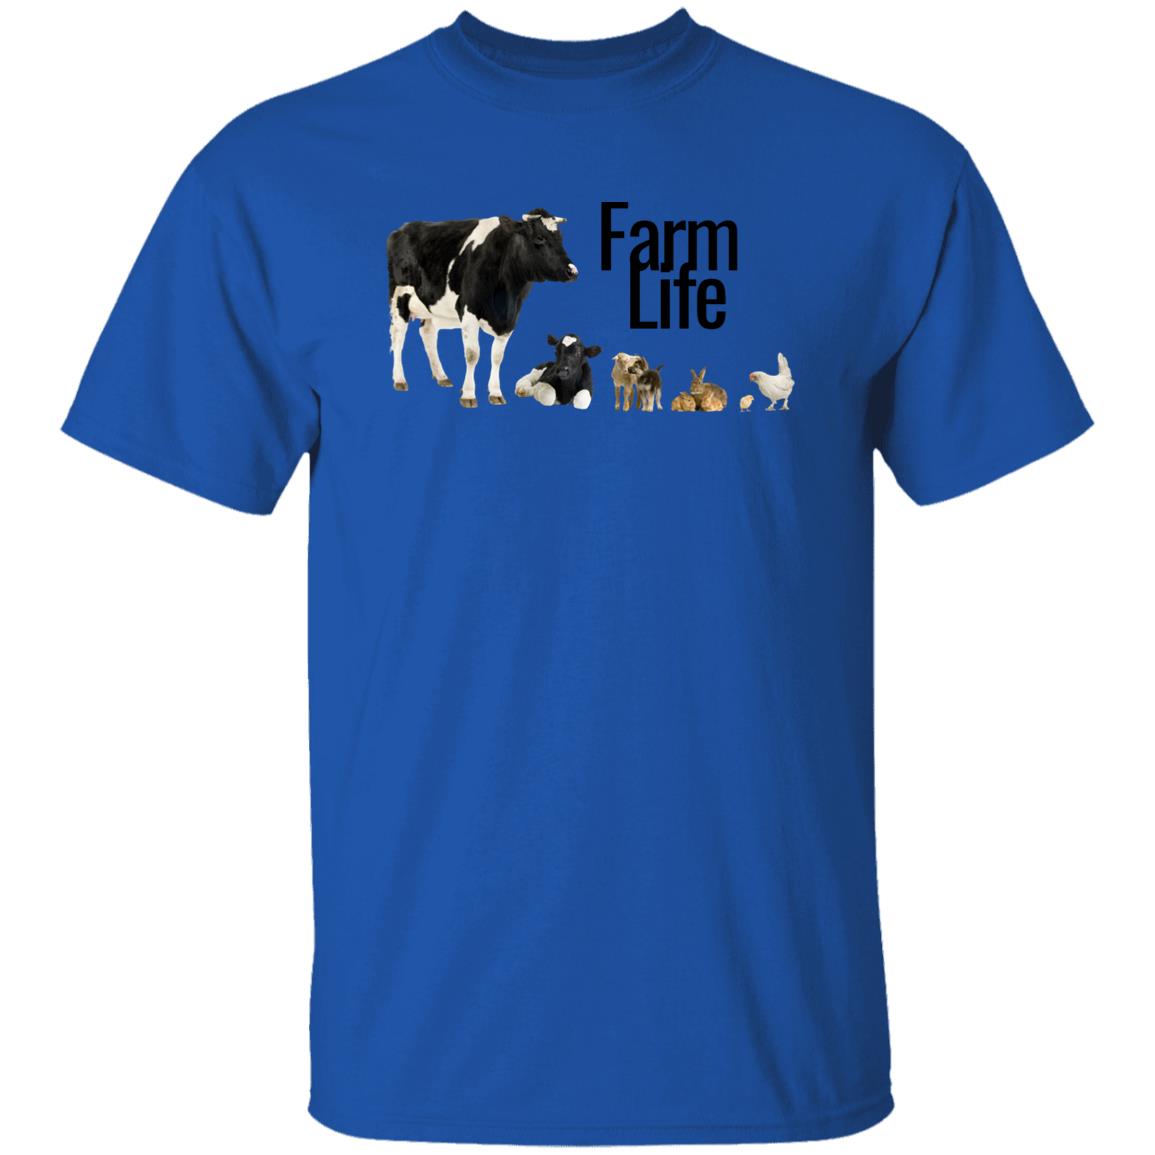 Farm Life (Black Print) G500 5.3 oz. T-Shirt